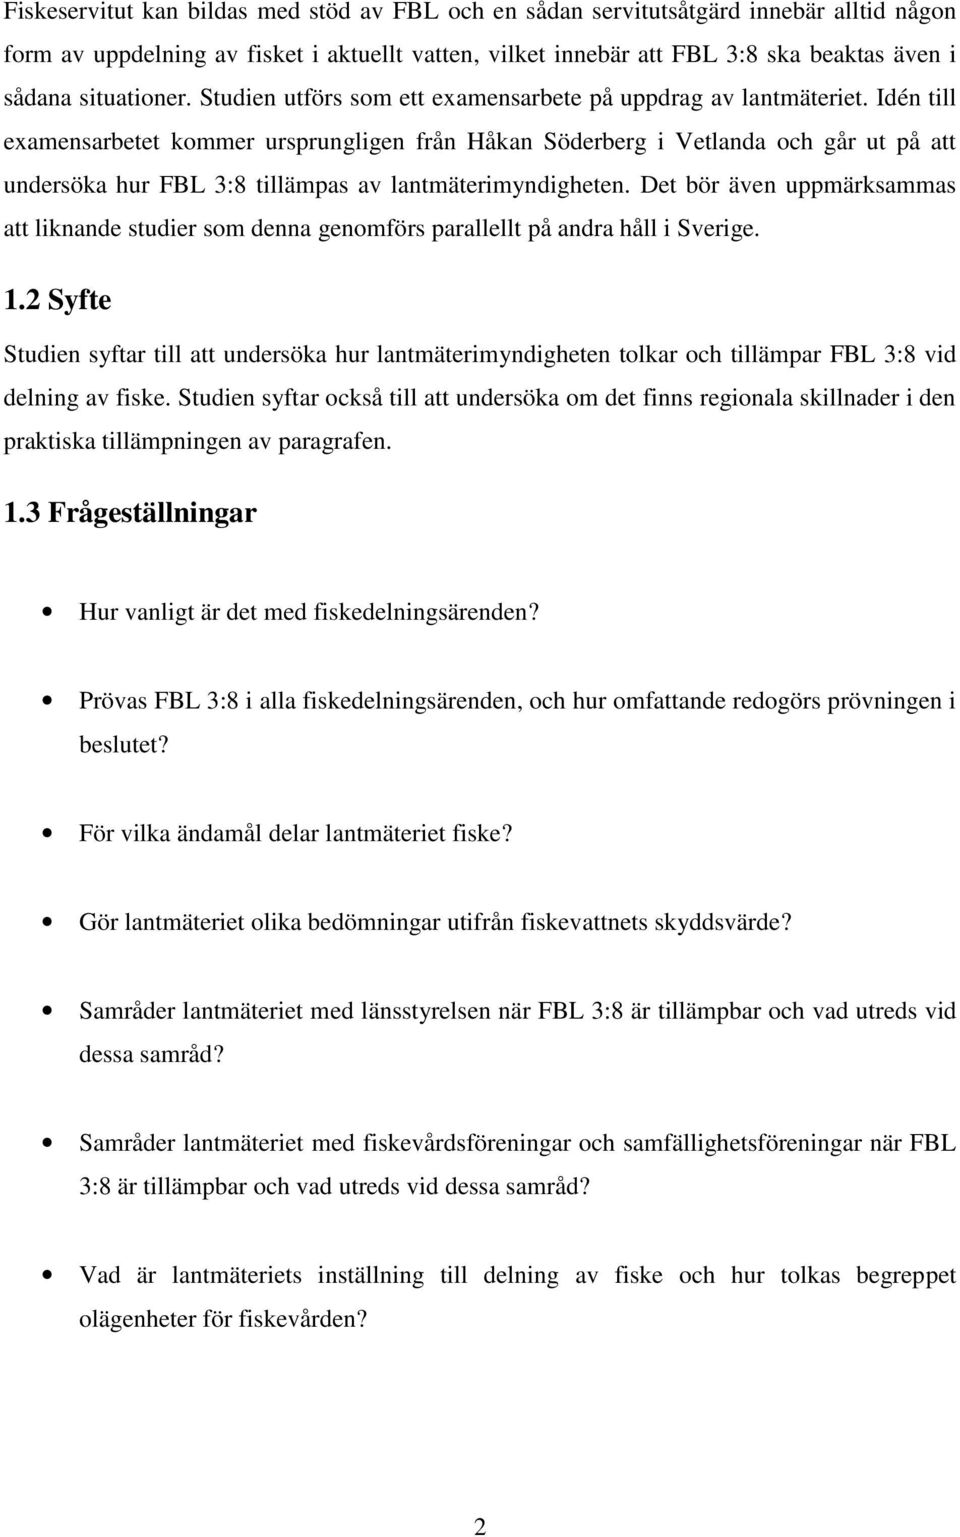 Idén till examensarbetet kommer ursprungligen från Håkan Söderberg i Vetlanda och går ut på att undersöka hur FBL 3:8 tillämpas av lantmäterimyndigheten.